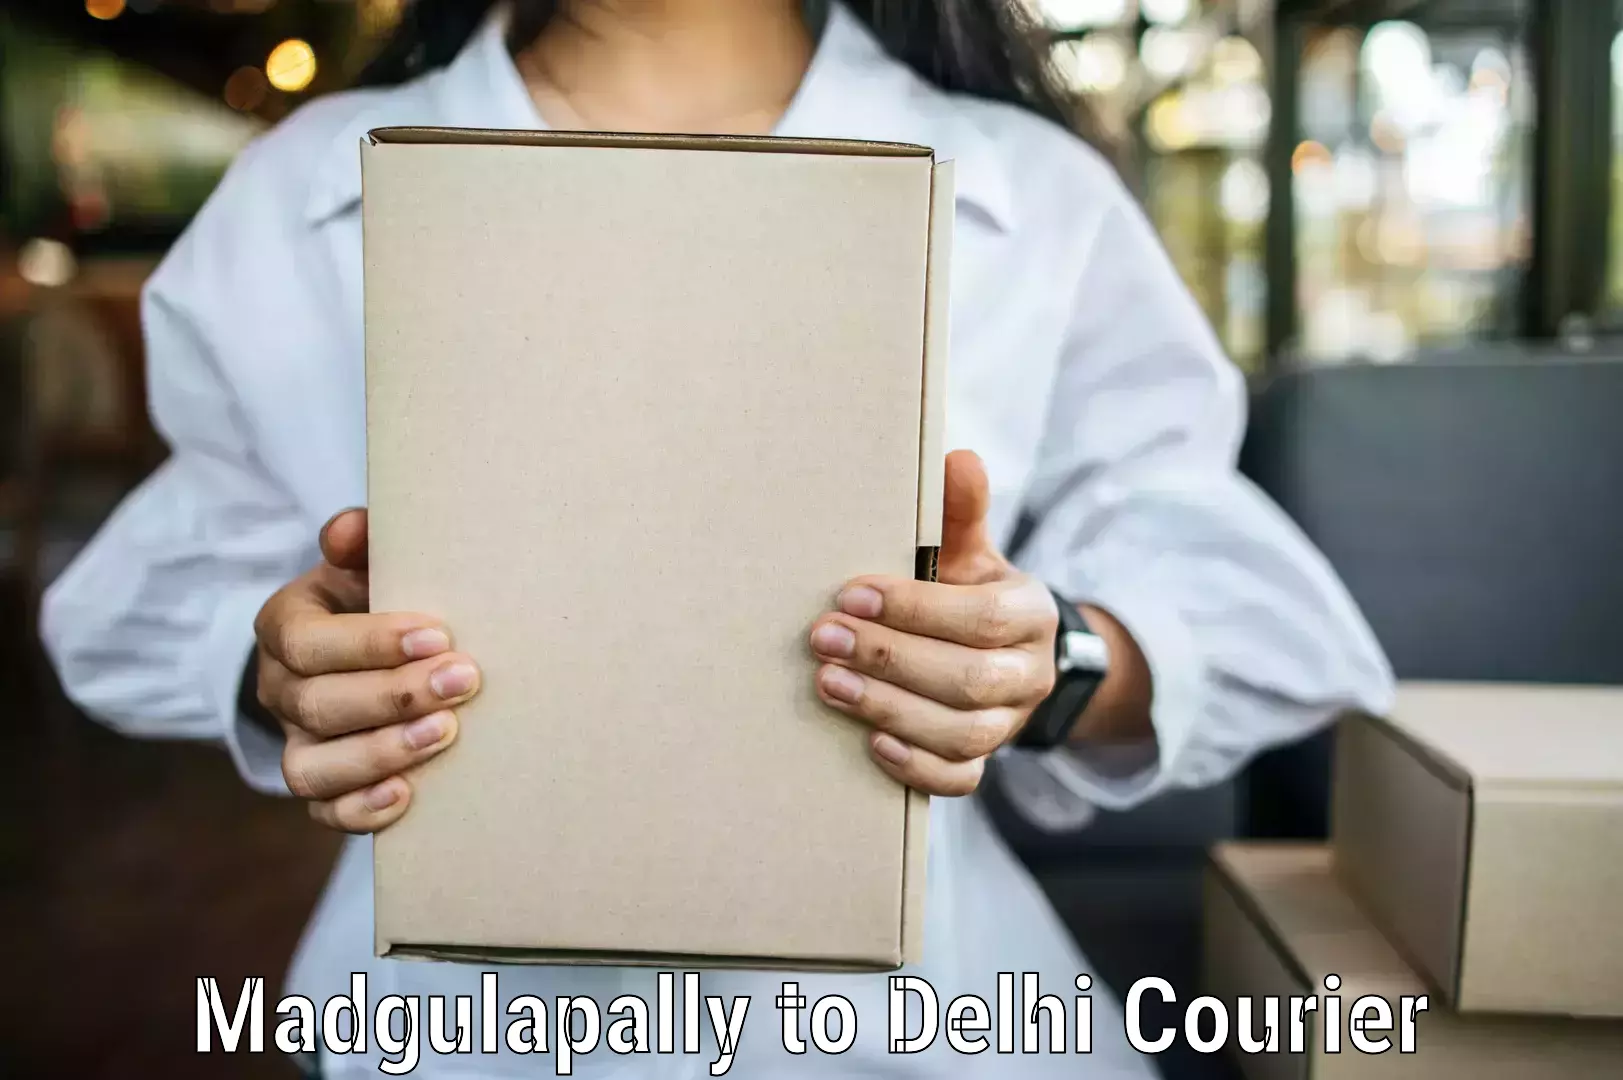 Door-to-door shipment Madgulapally to University of Delhi